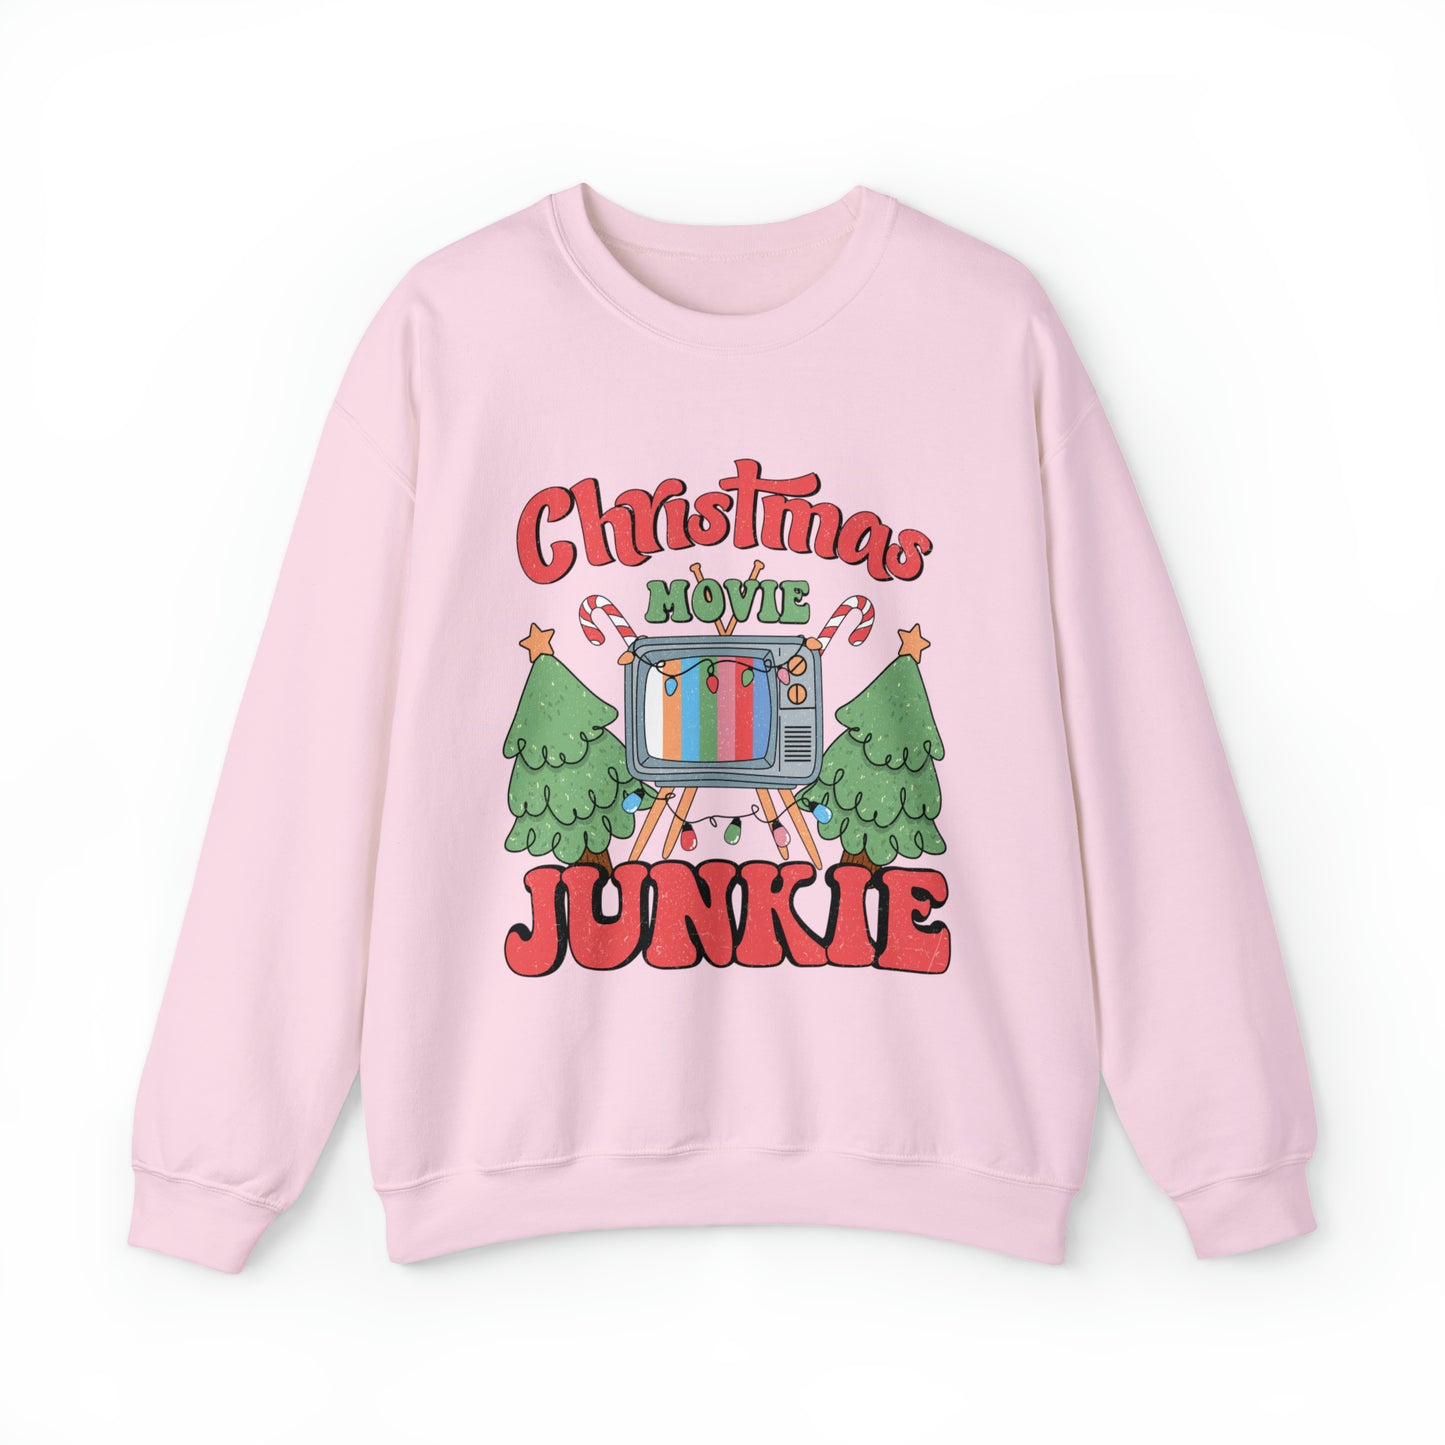 Christmas Movie Junkie Adult Unisex Christmas Crewneck Sweatshirt